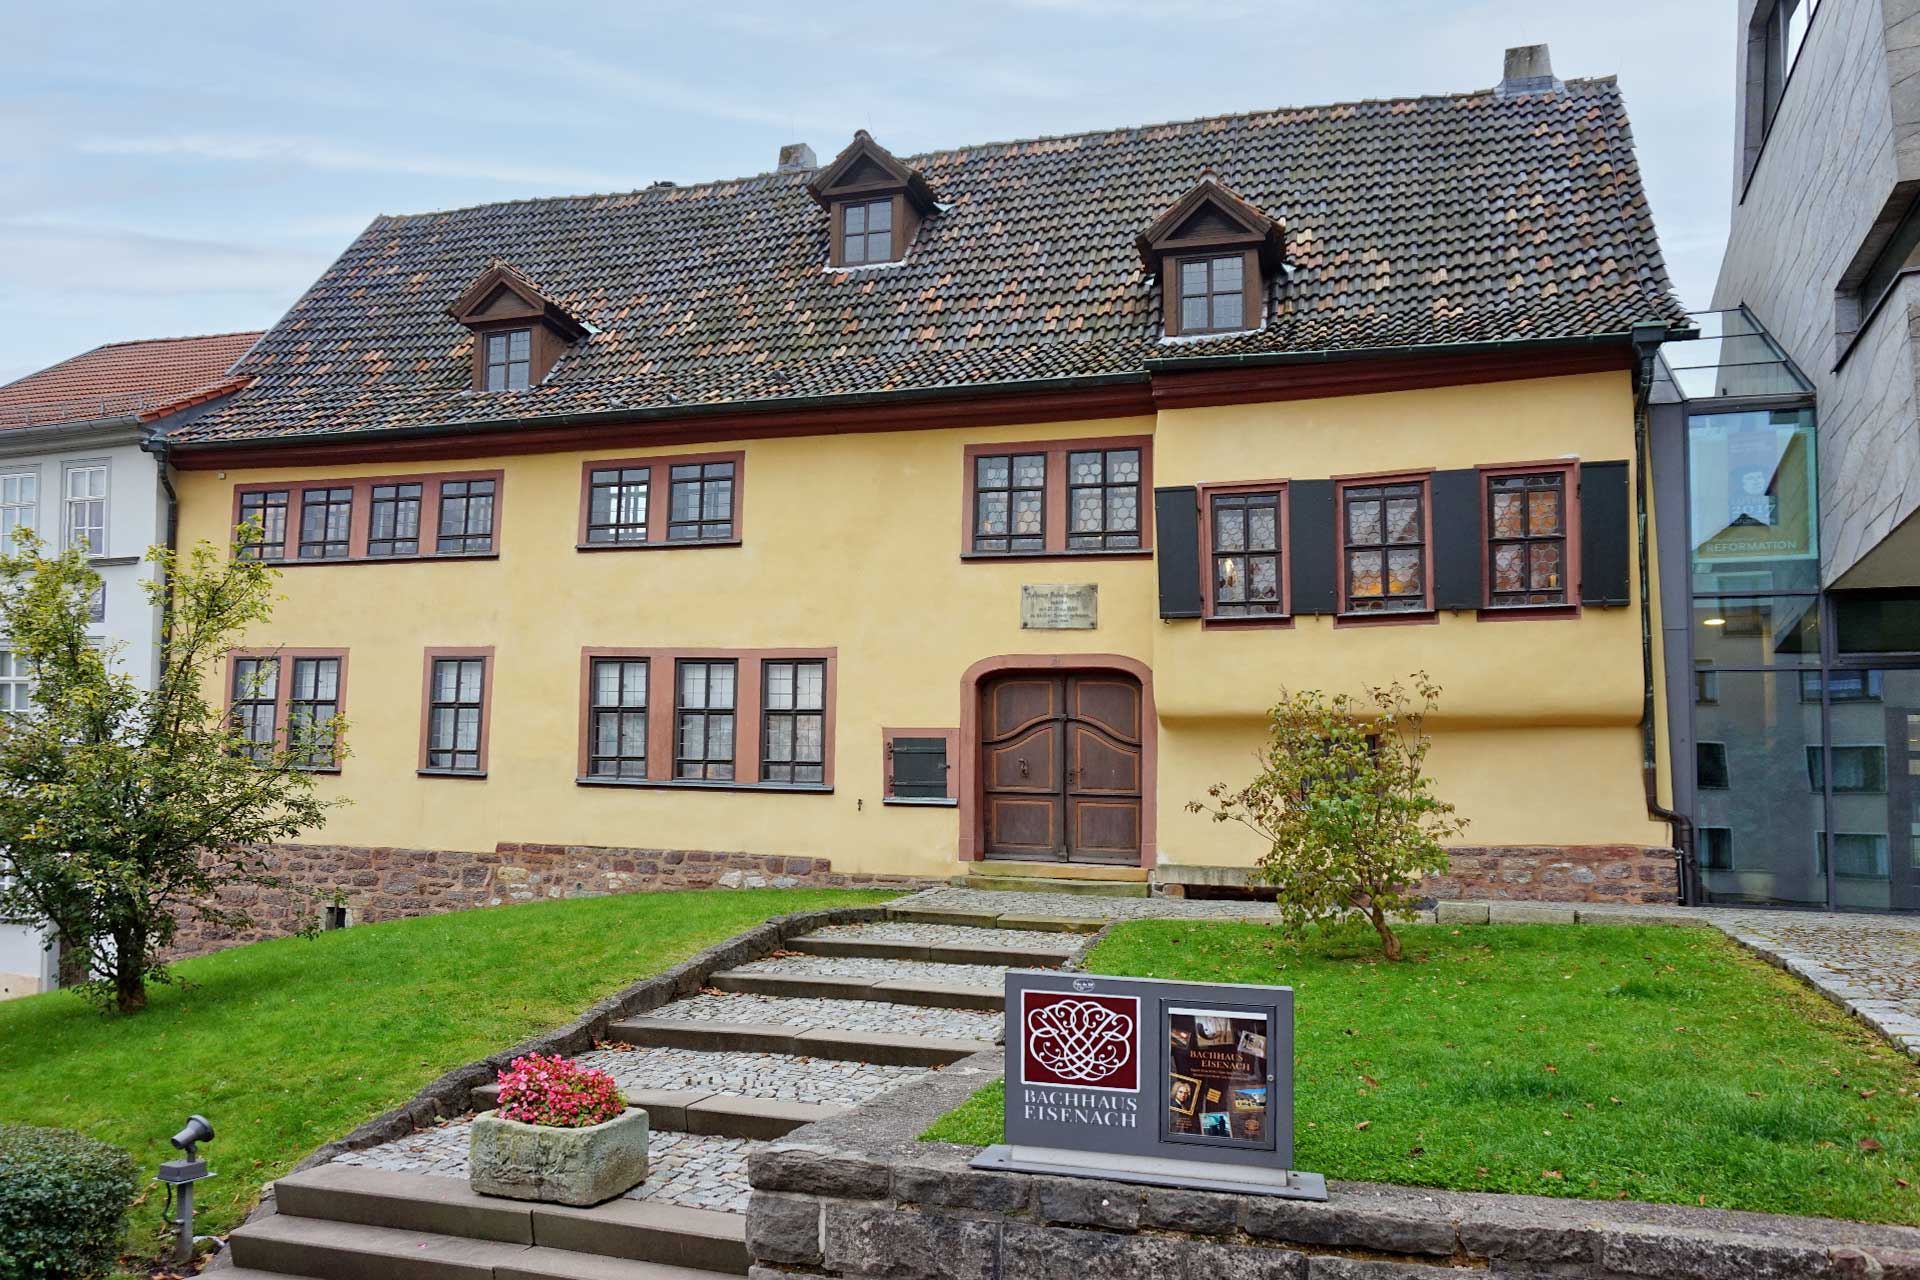 Das Bachhaus, 1907 als erstes Bach-Museum eröffnet.